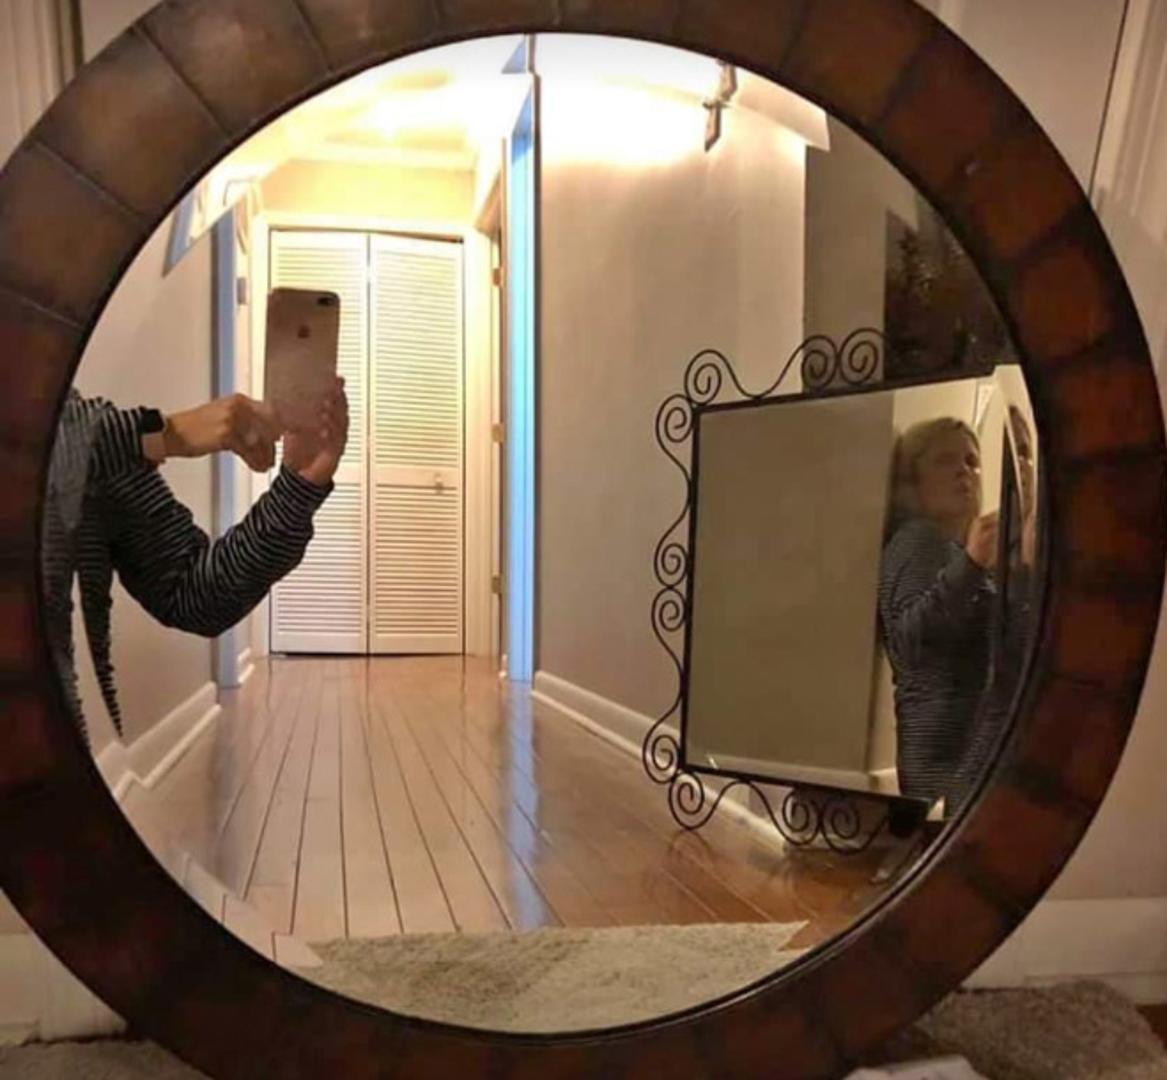 Korisnici društvenih mreža oduševljeni su fotografijama ljudi koji prodaju ogledala. Jer, realno, kako to može ispasti nego – smiješno?